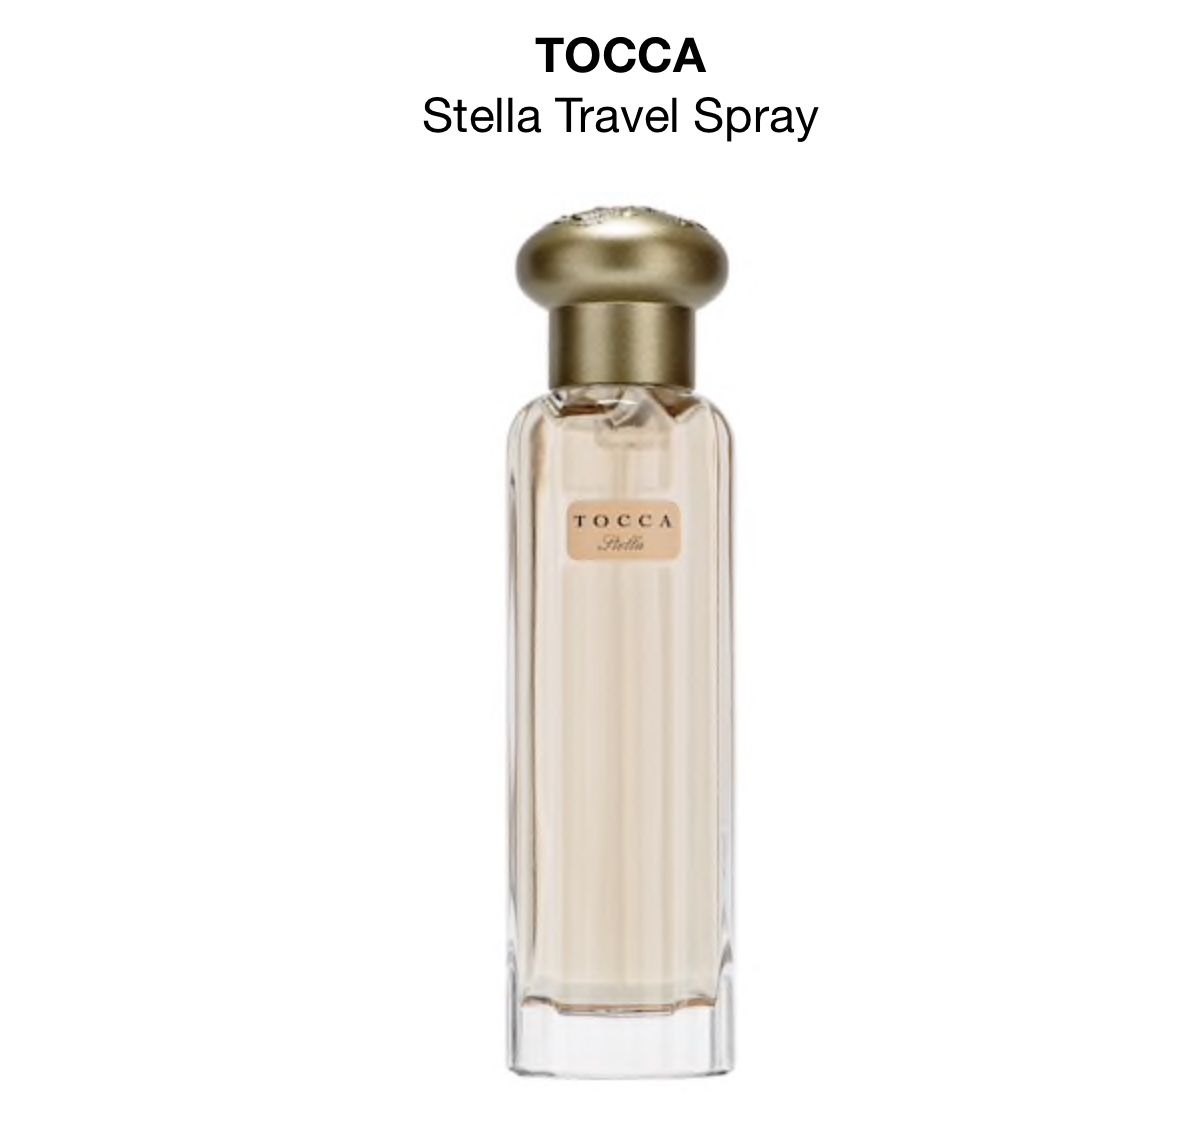 TOCCA Stella Travel Spray